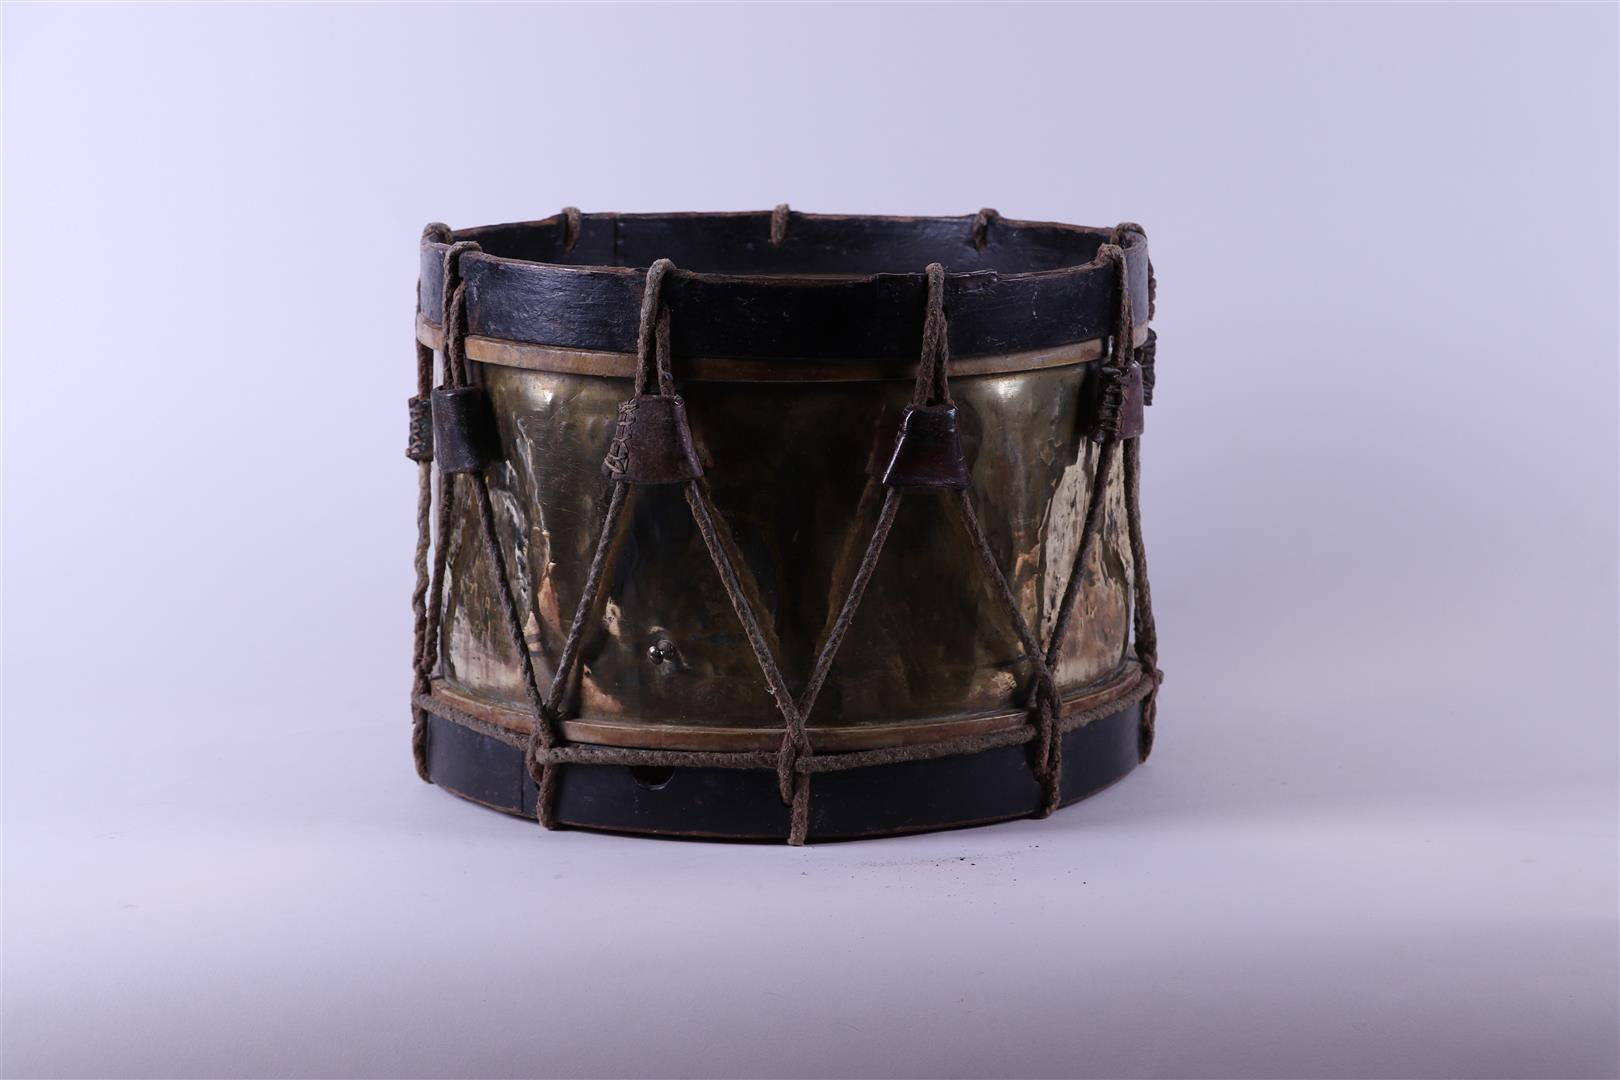 A brass 19th century drum.